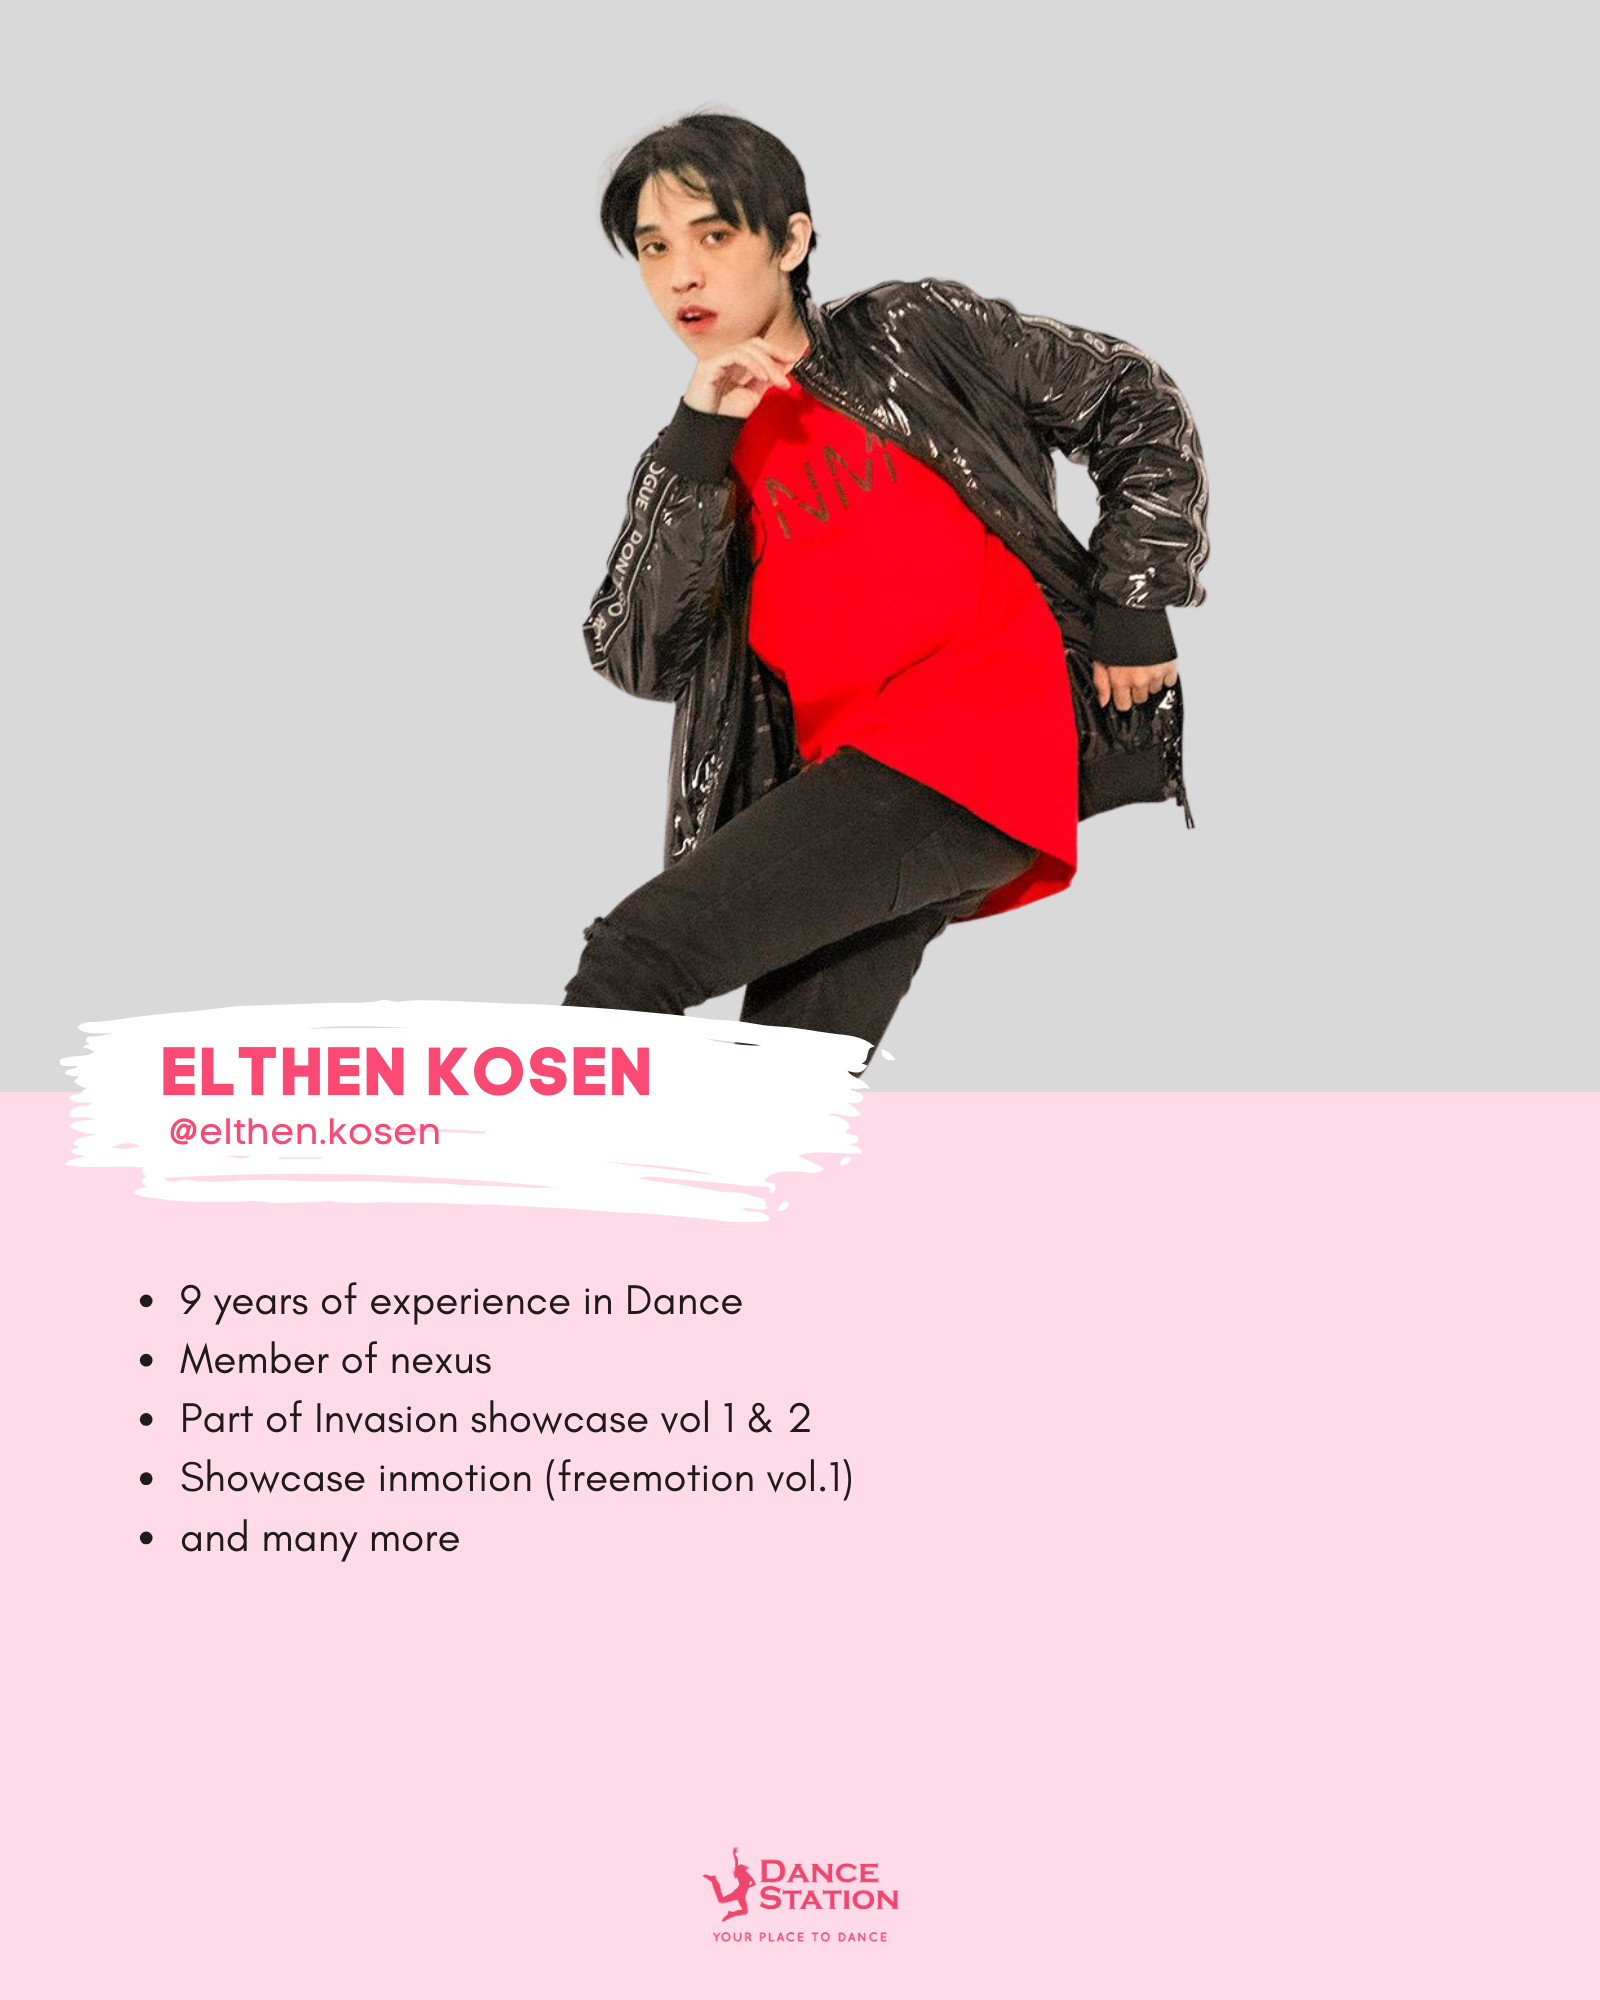 ELTHEN KOSEN (MR. Elthen)